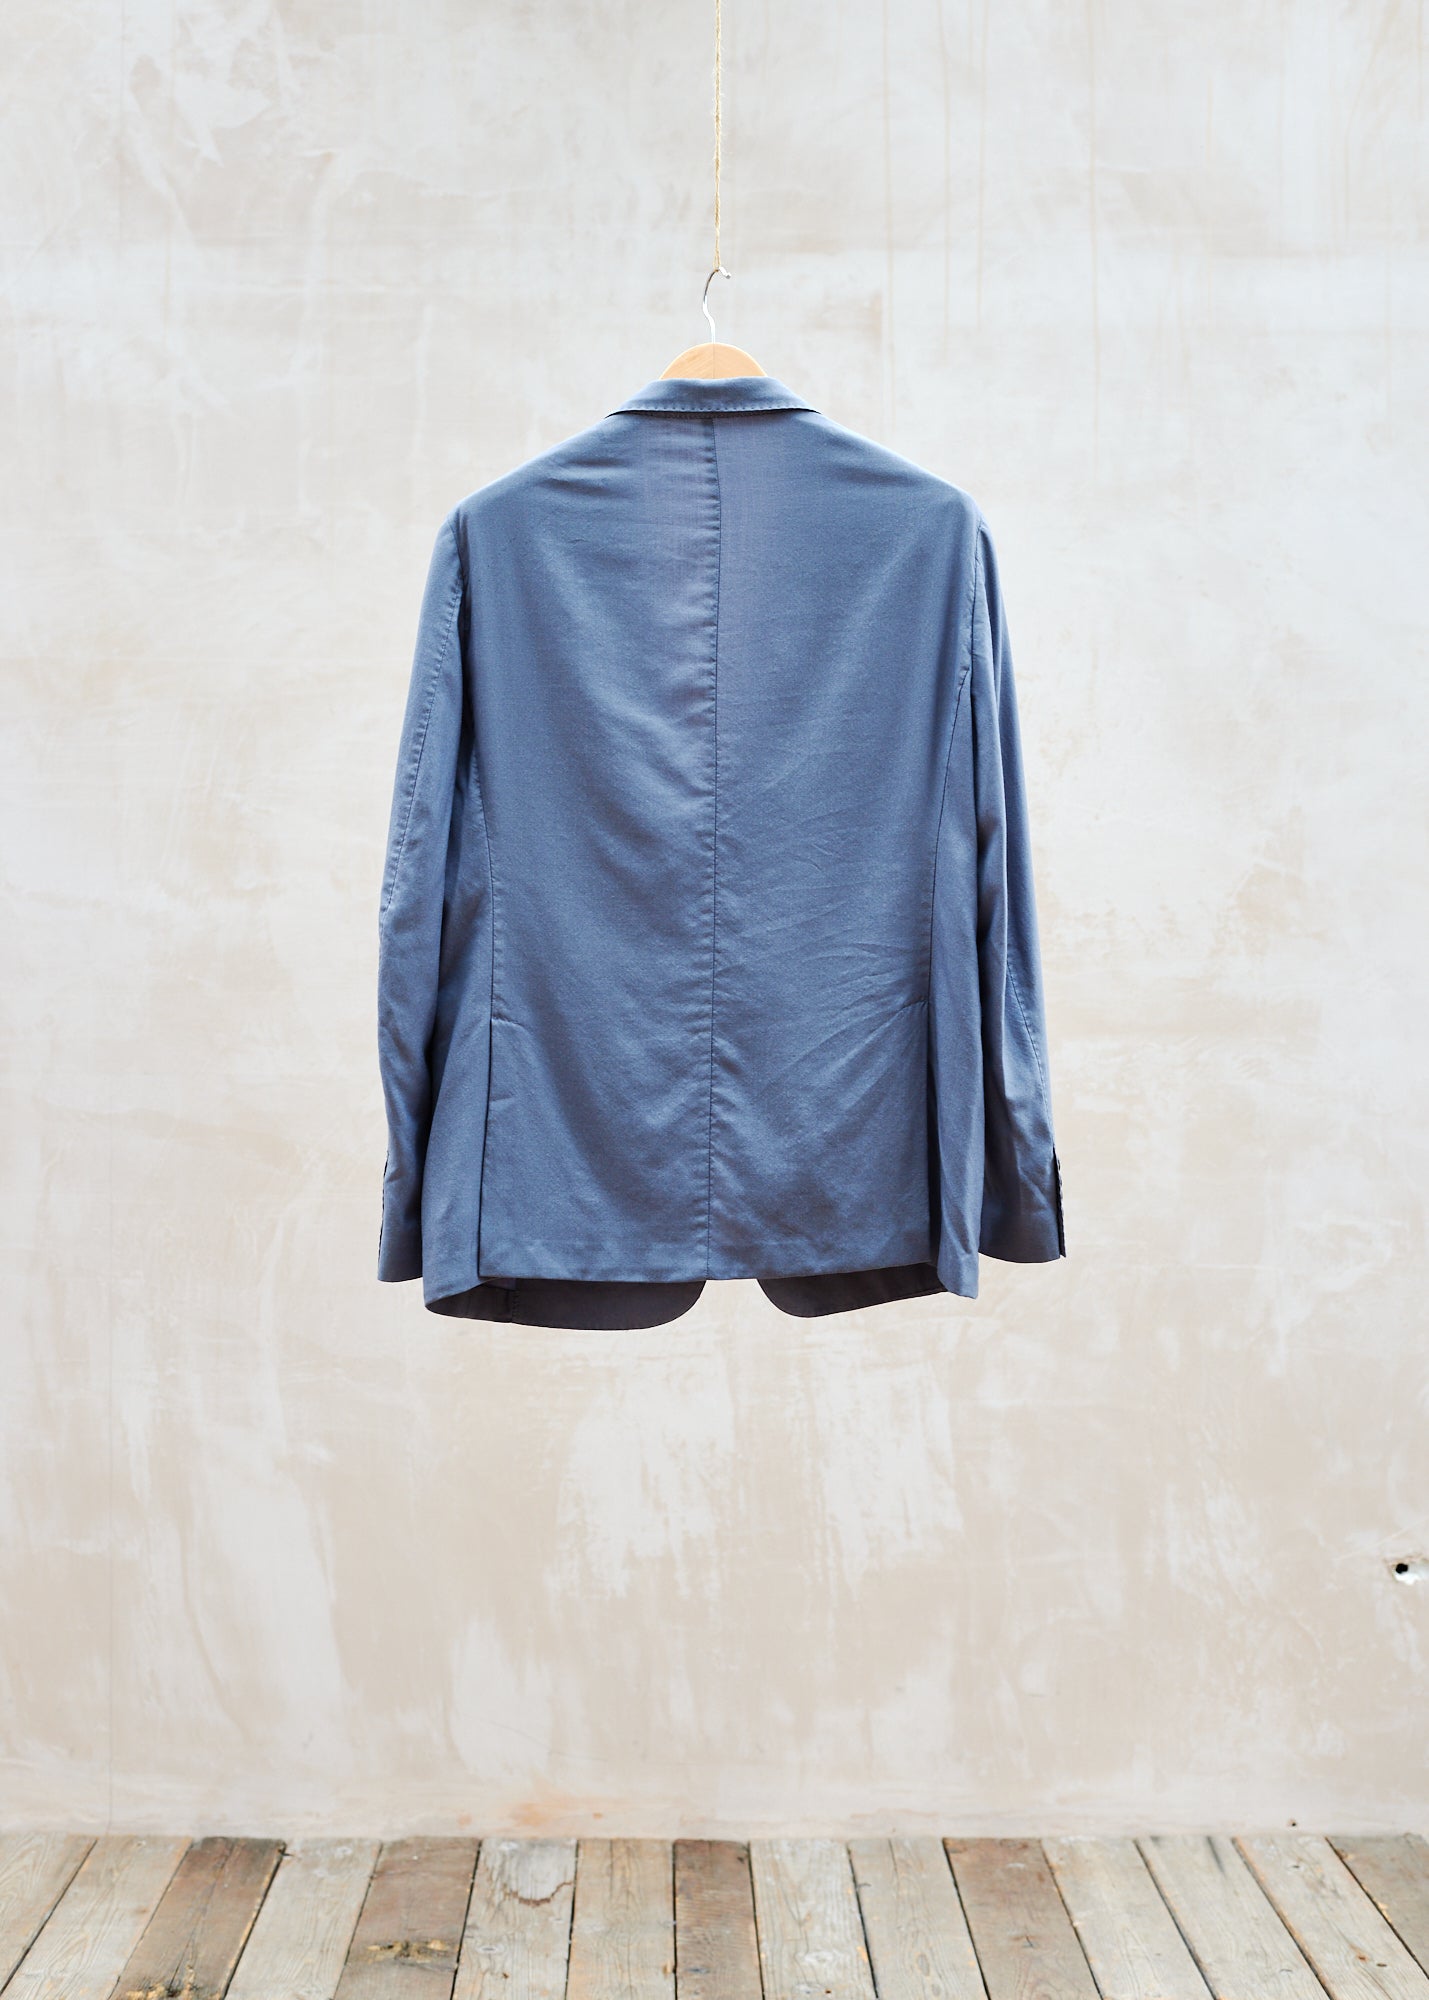 Dunhill Unstructured Cashmere/Silk Steel Blue Blazer 